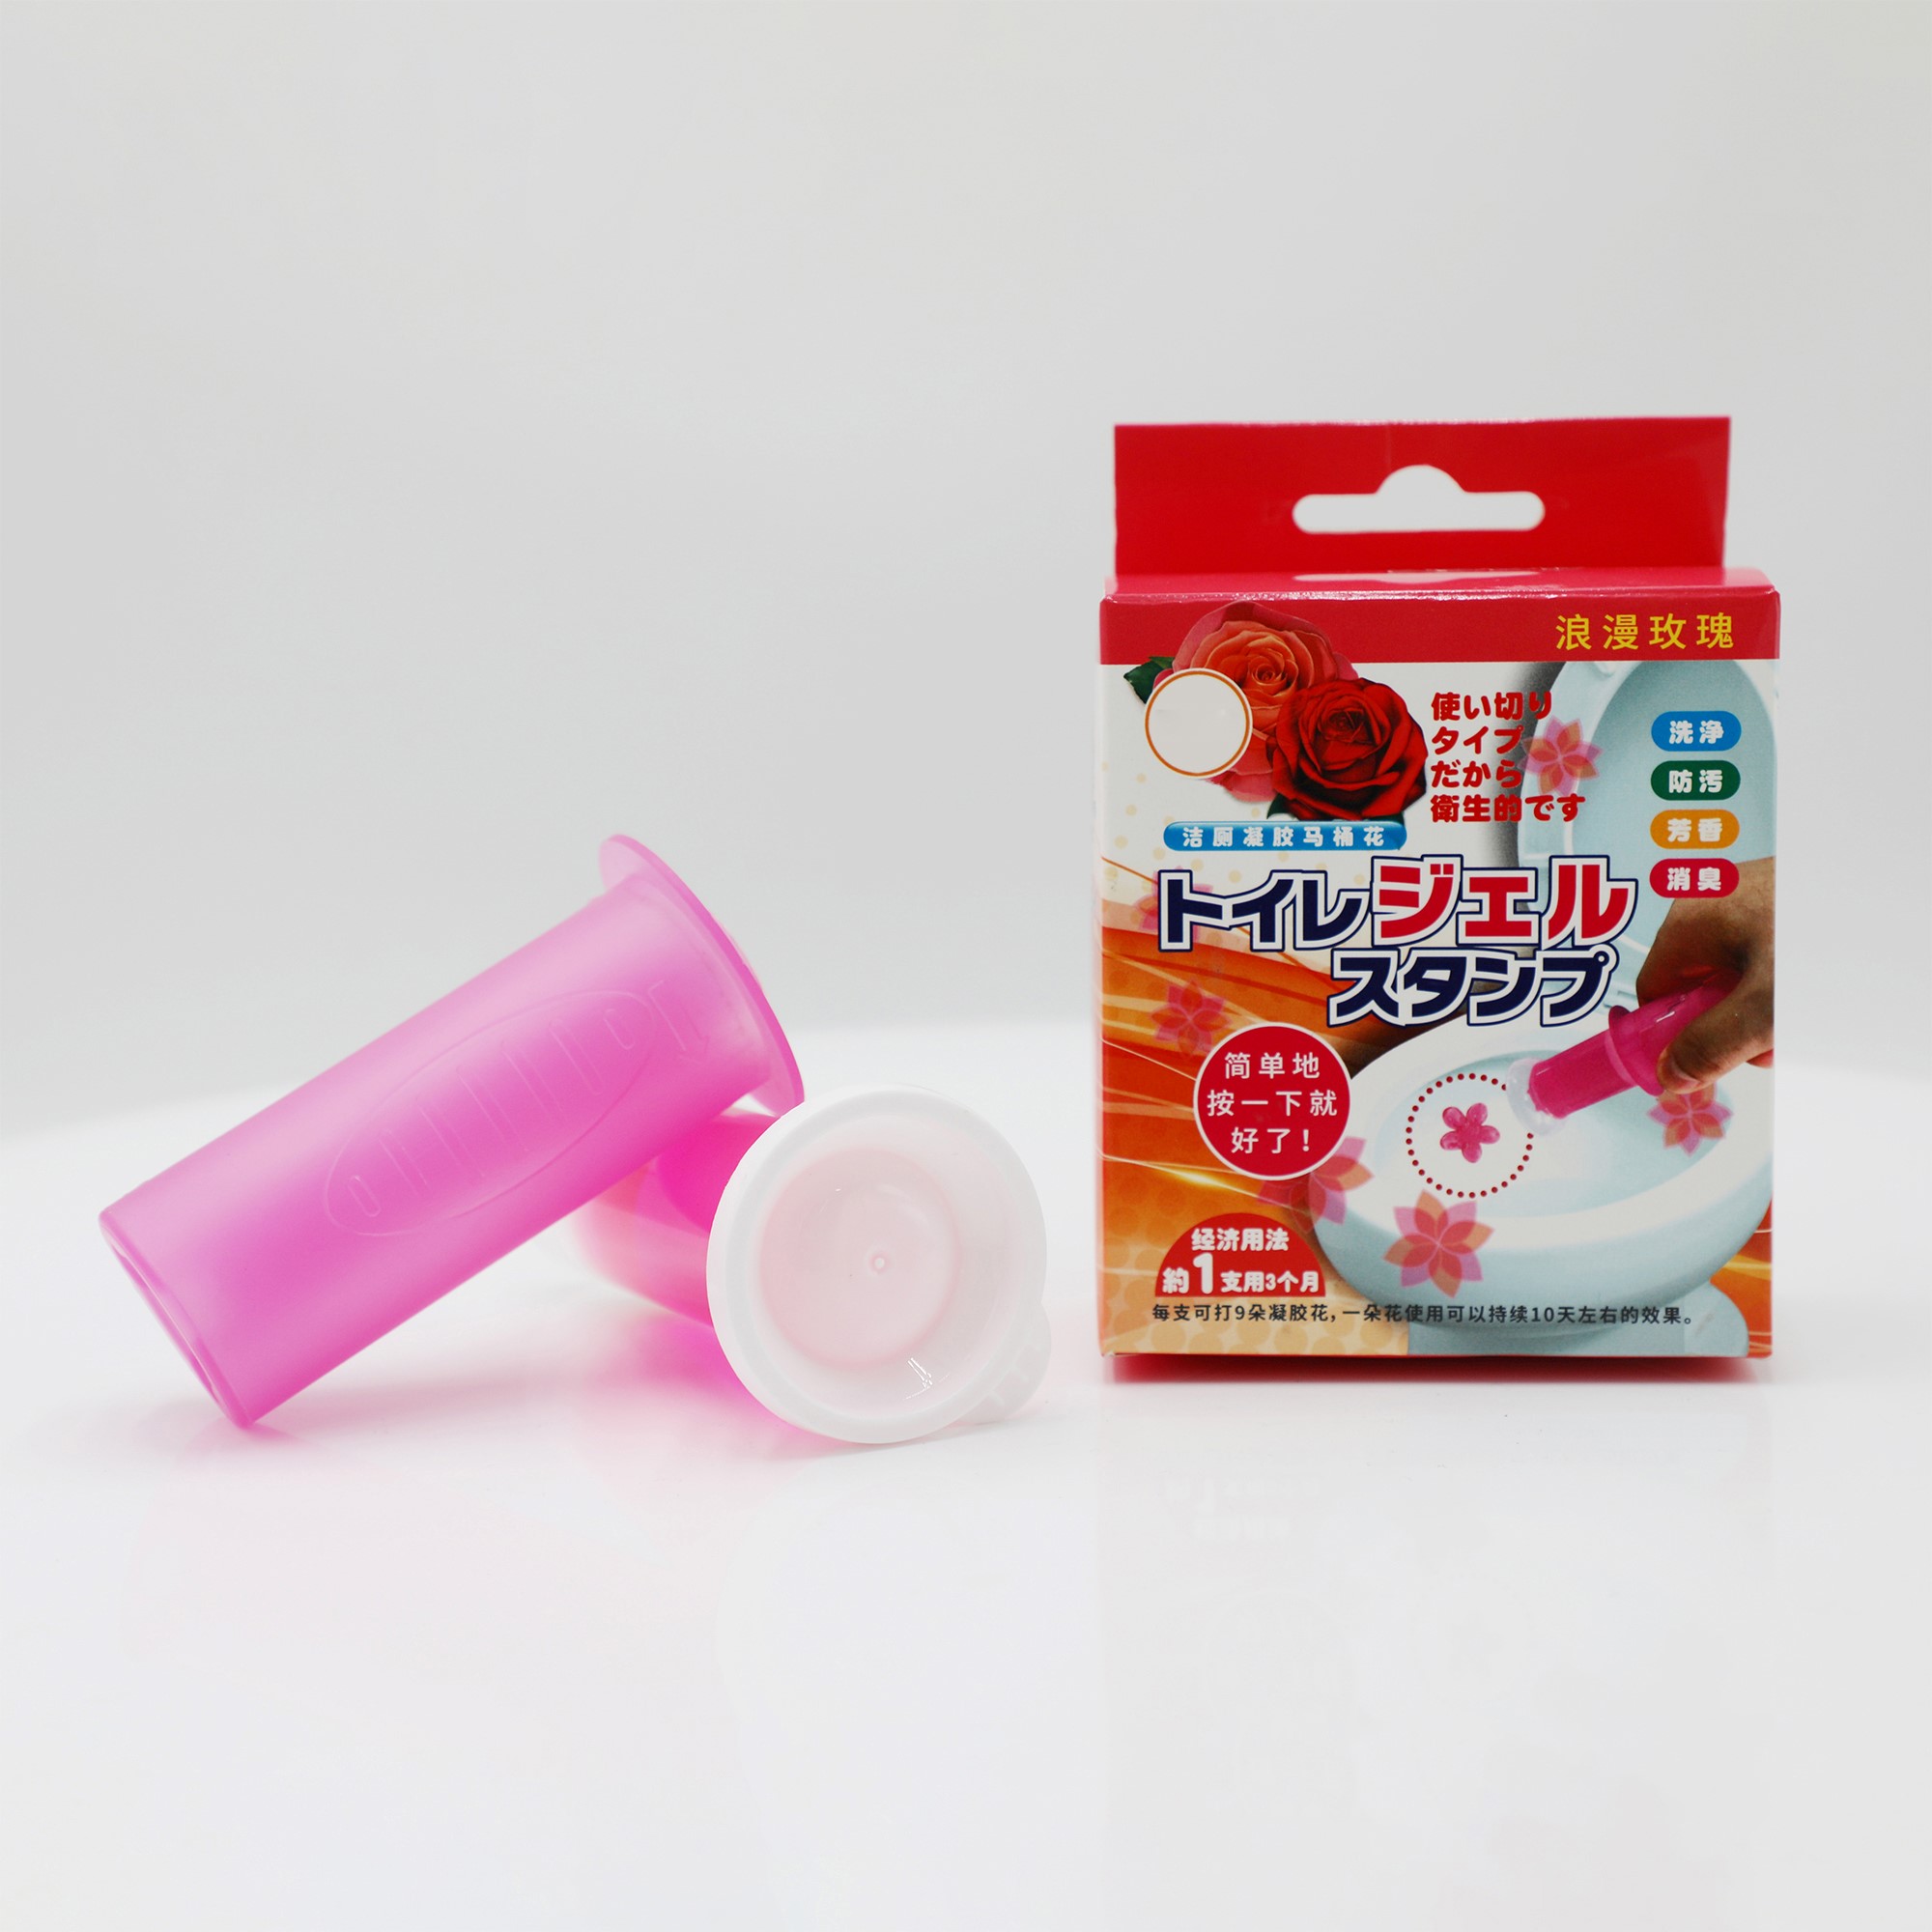 분홍색 플라스틱 변기 청소 접시 - 쉽고 효과적인 1*40g